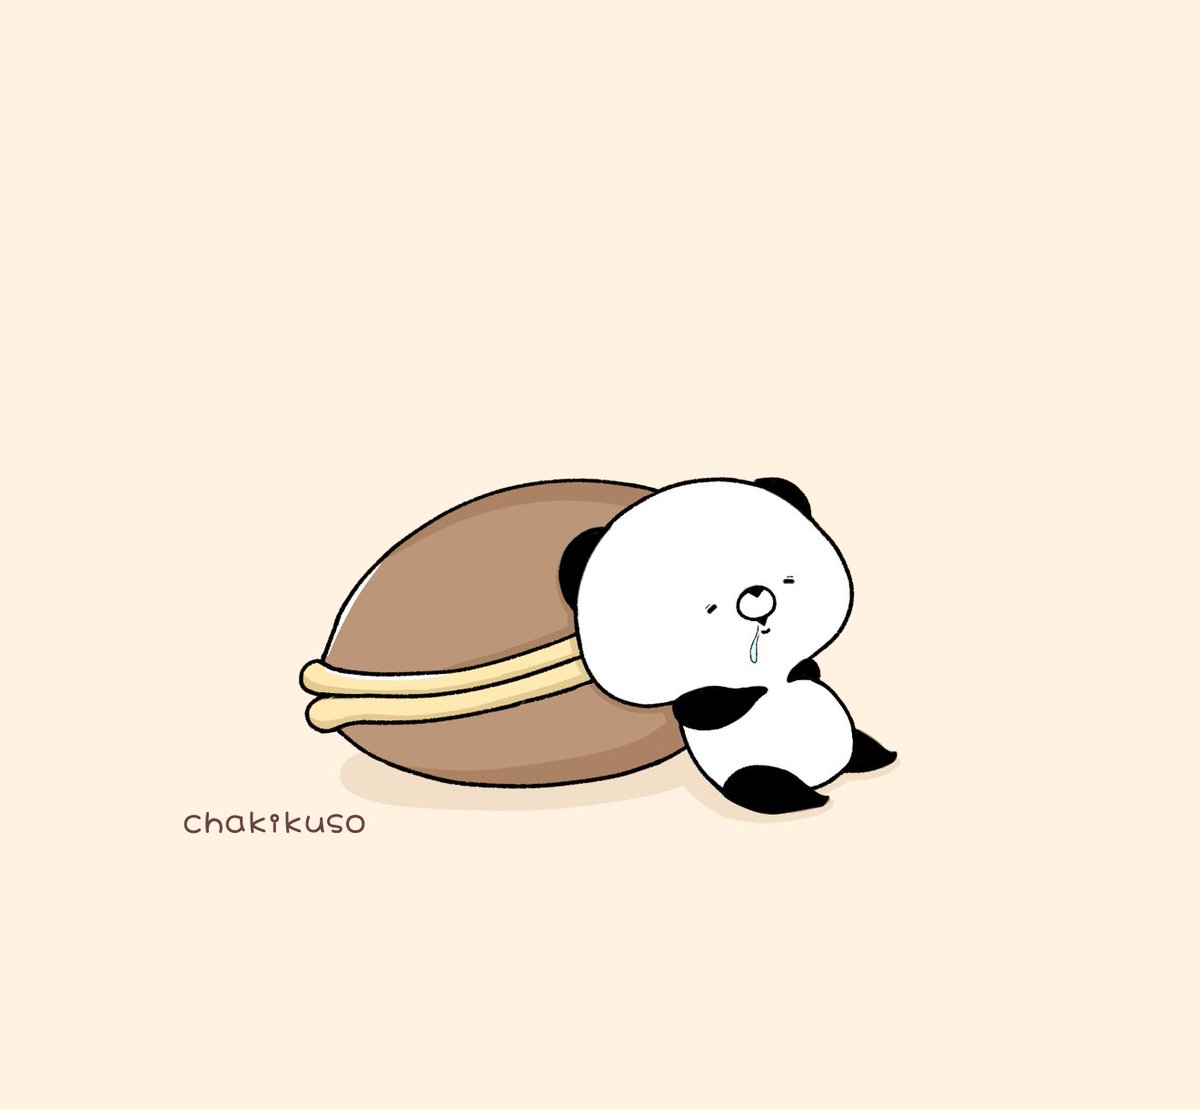 「どら焼きたべたい
#こころにパンダ #イラスト #和菓子の日 」|chakikusoのイラスト